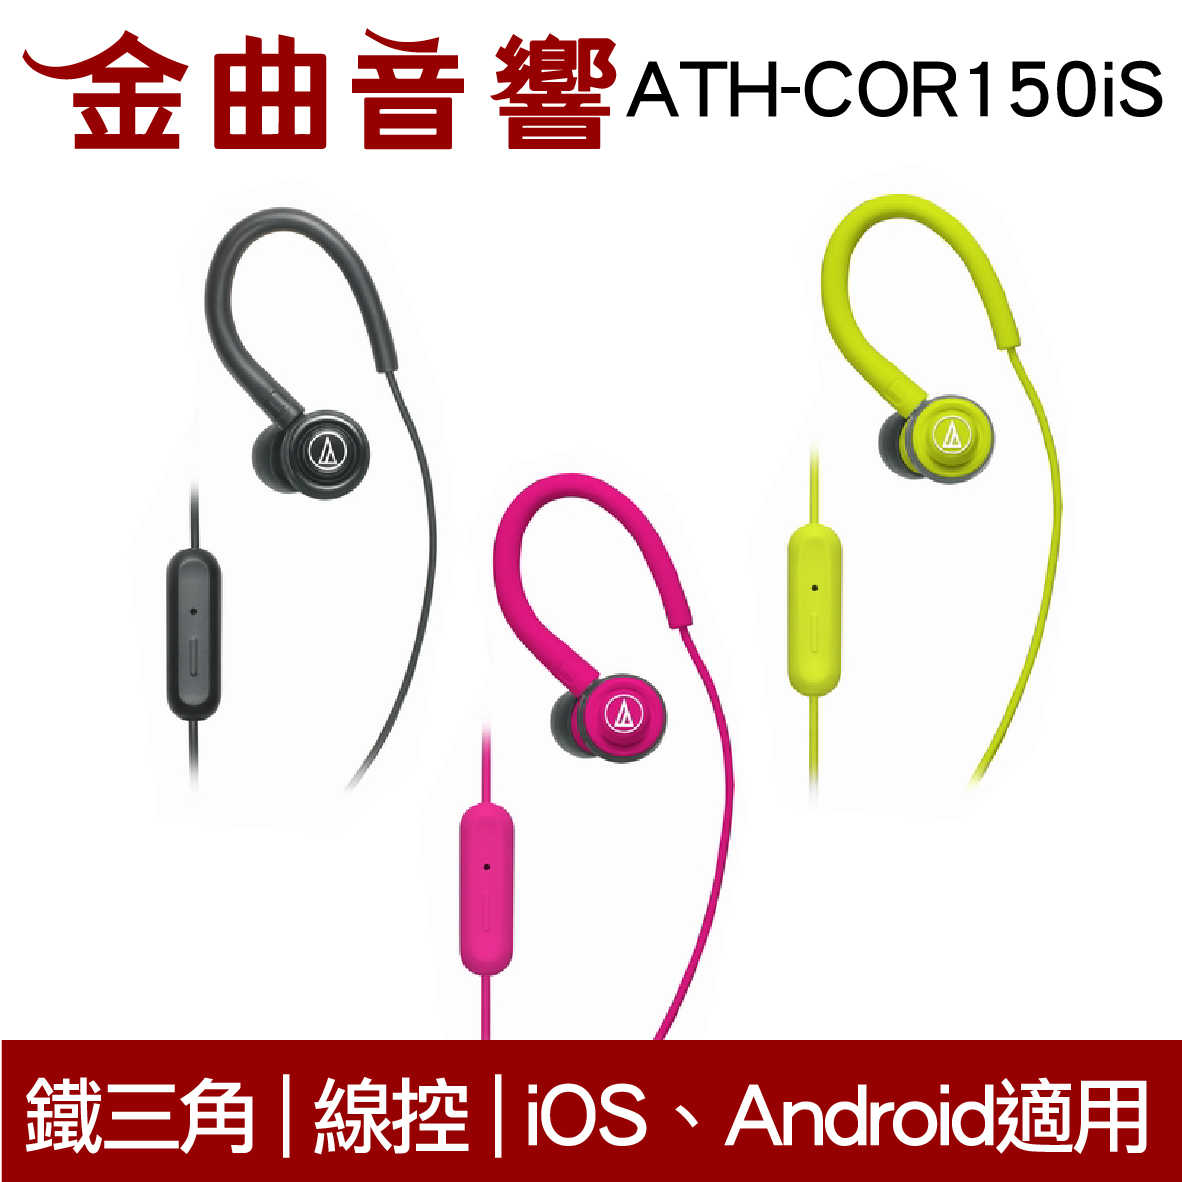 鐵三角 ATH-COR150iS 綠 線控耳道式耳機 IPhone IOS 安卓適用 | 金曲音響